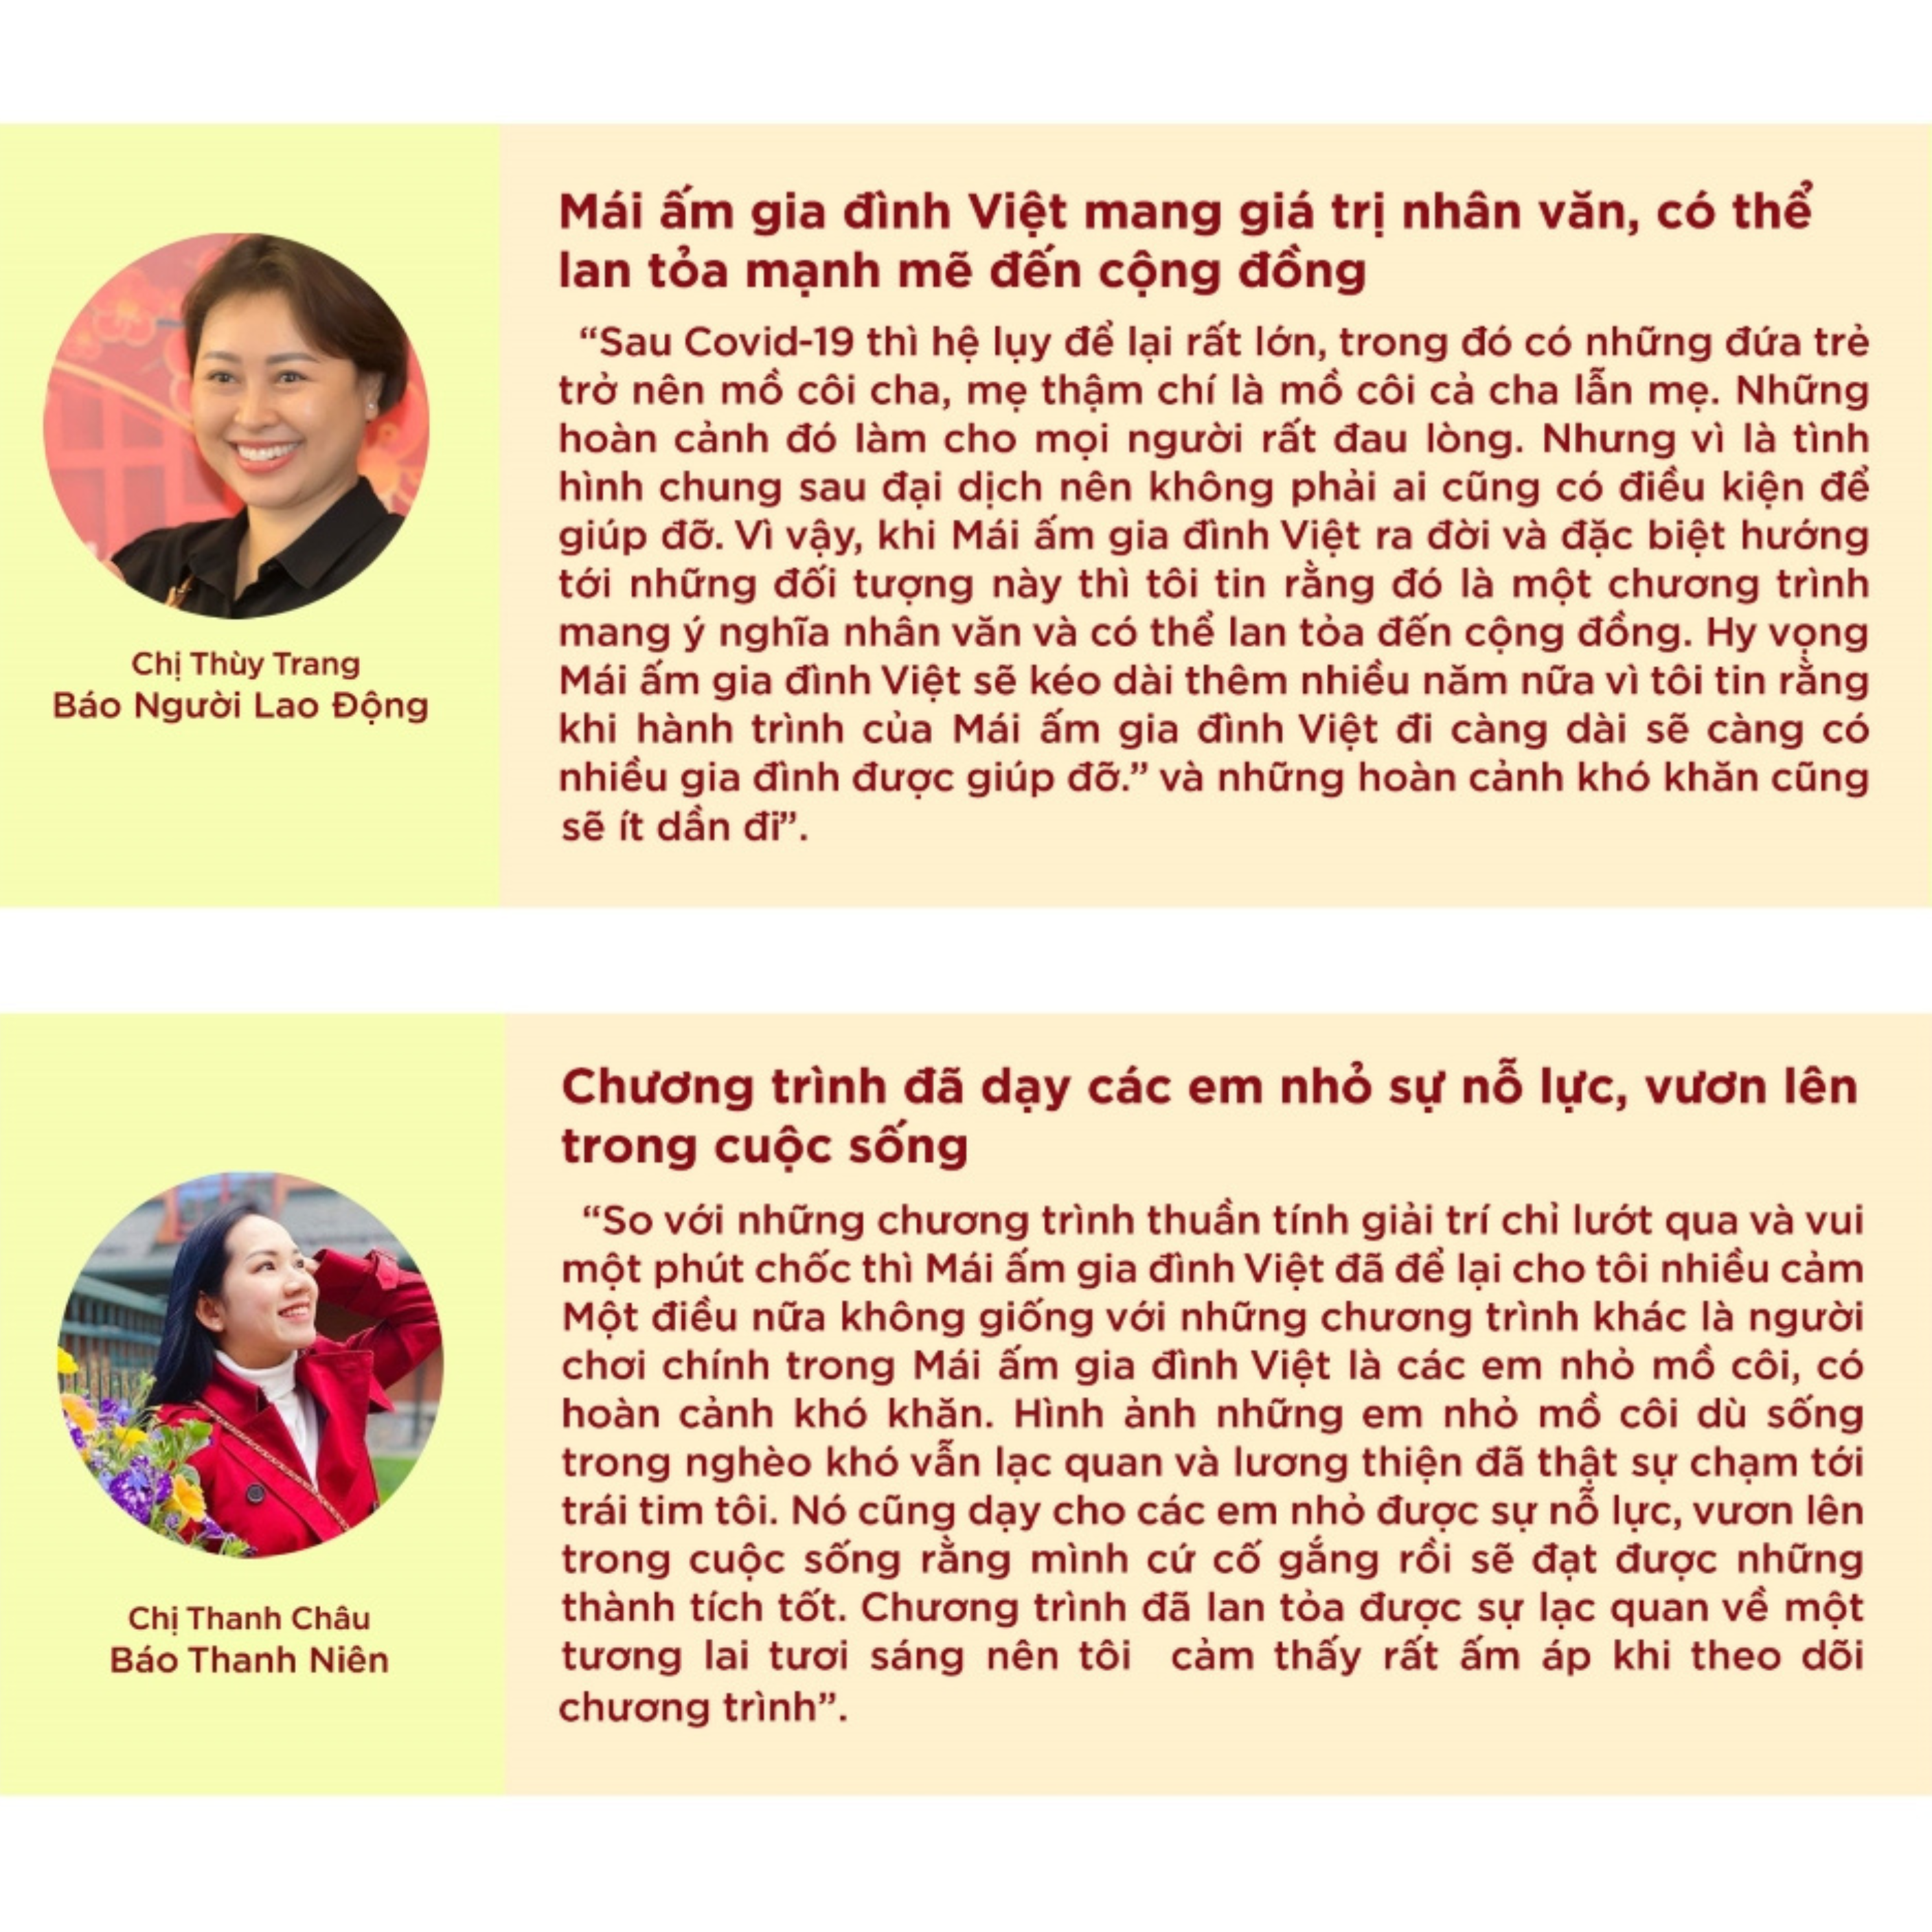 Chia sẻ đầy xúc động của Nhà báo Thùy Trang và Nhà báo Thanh Châu